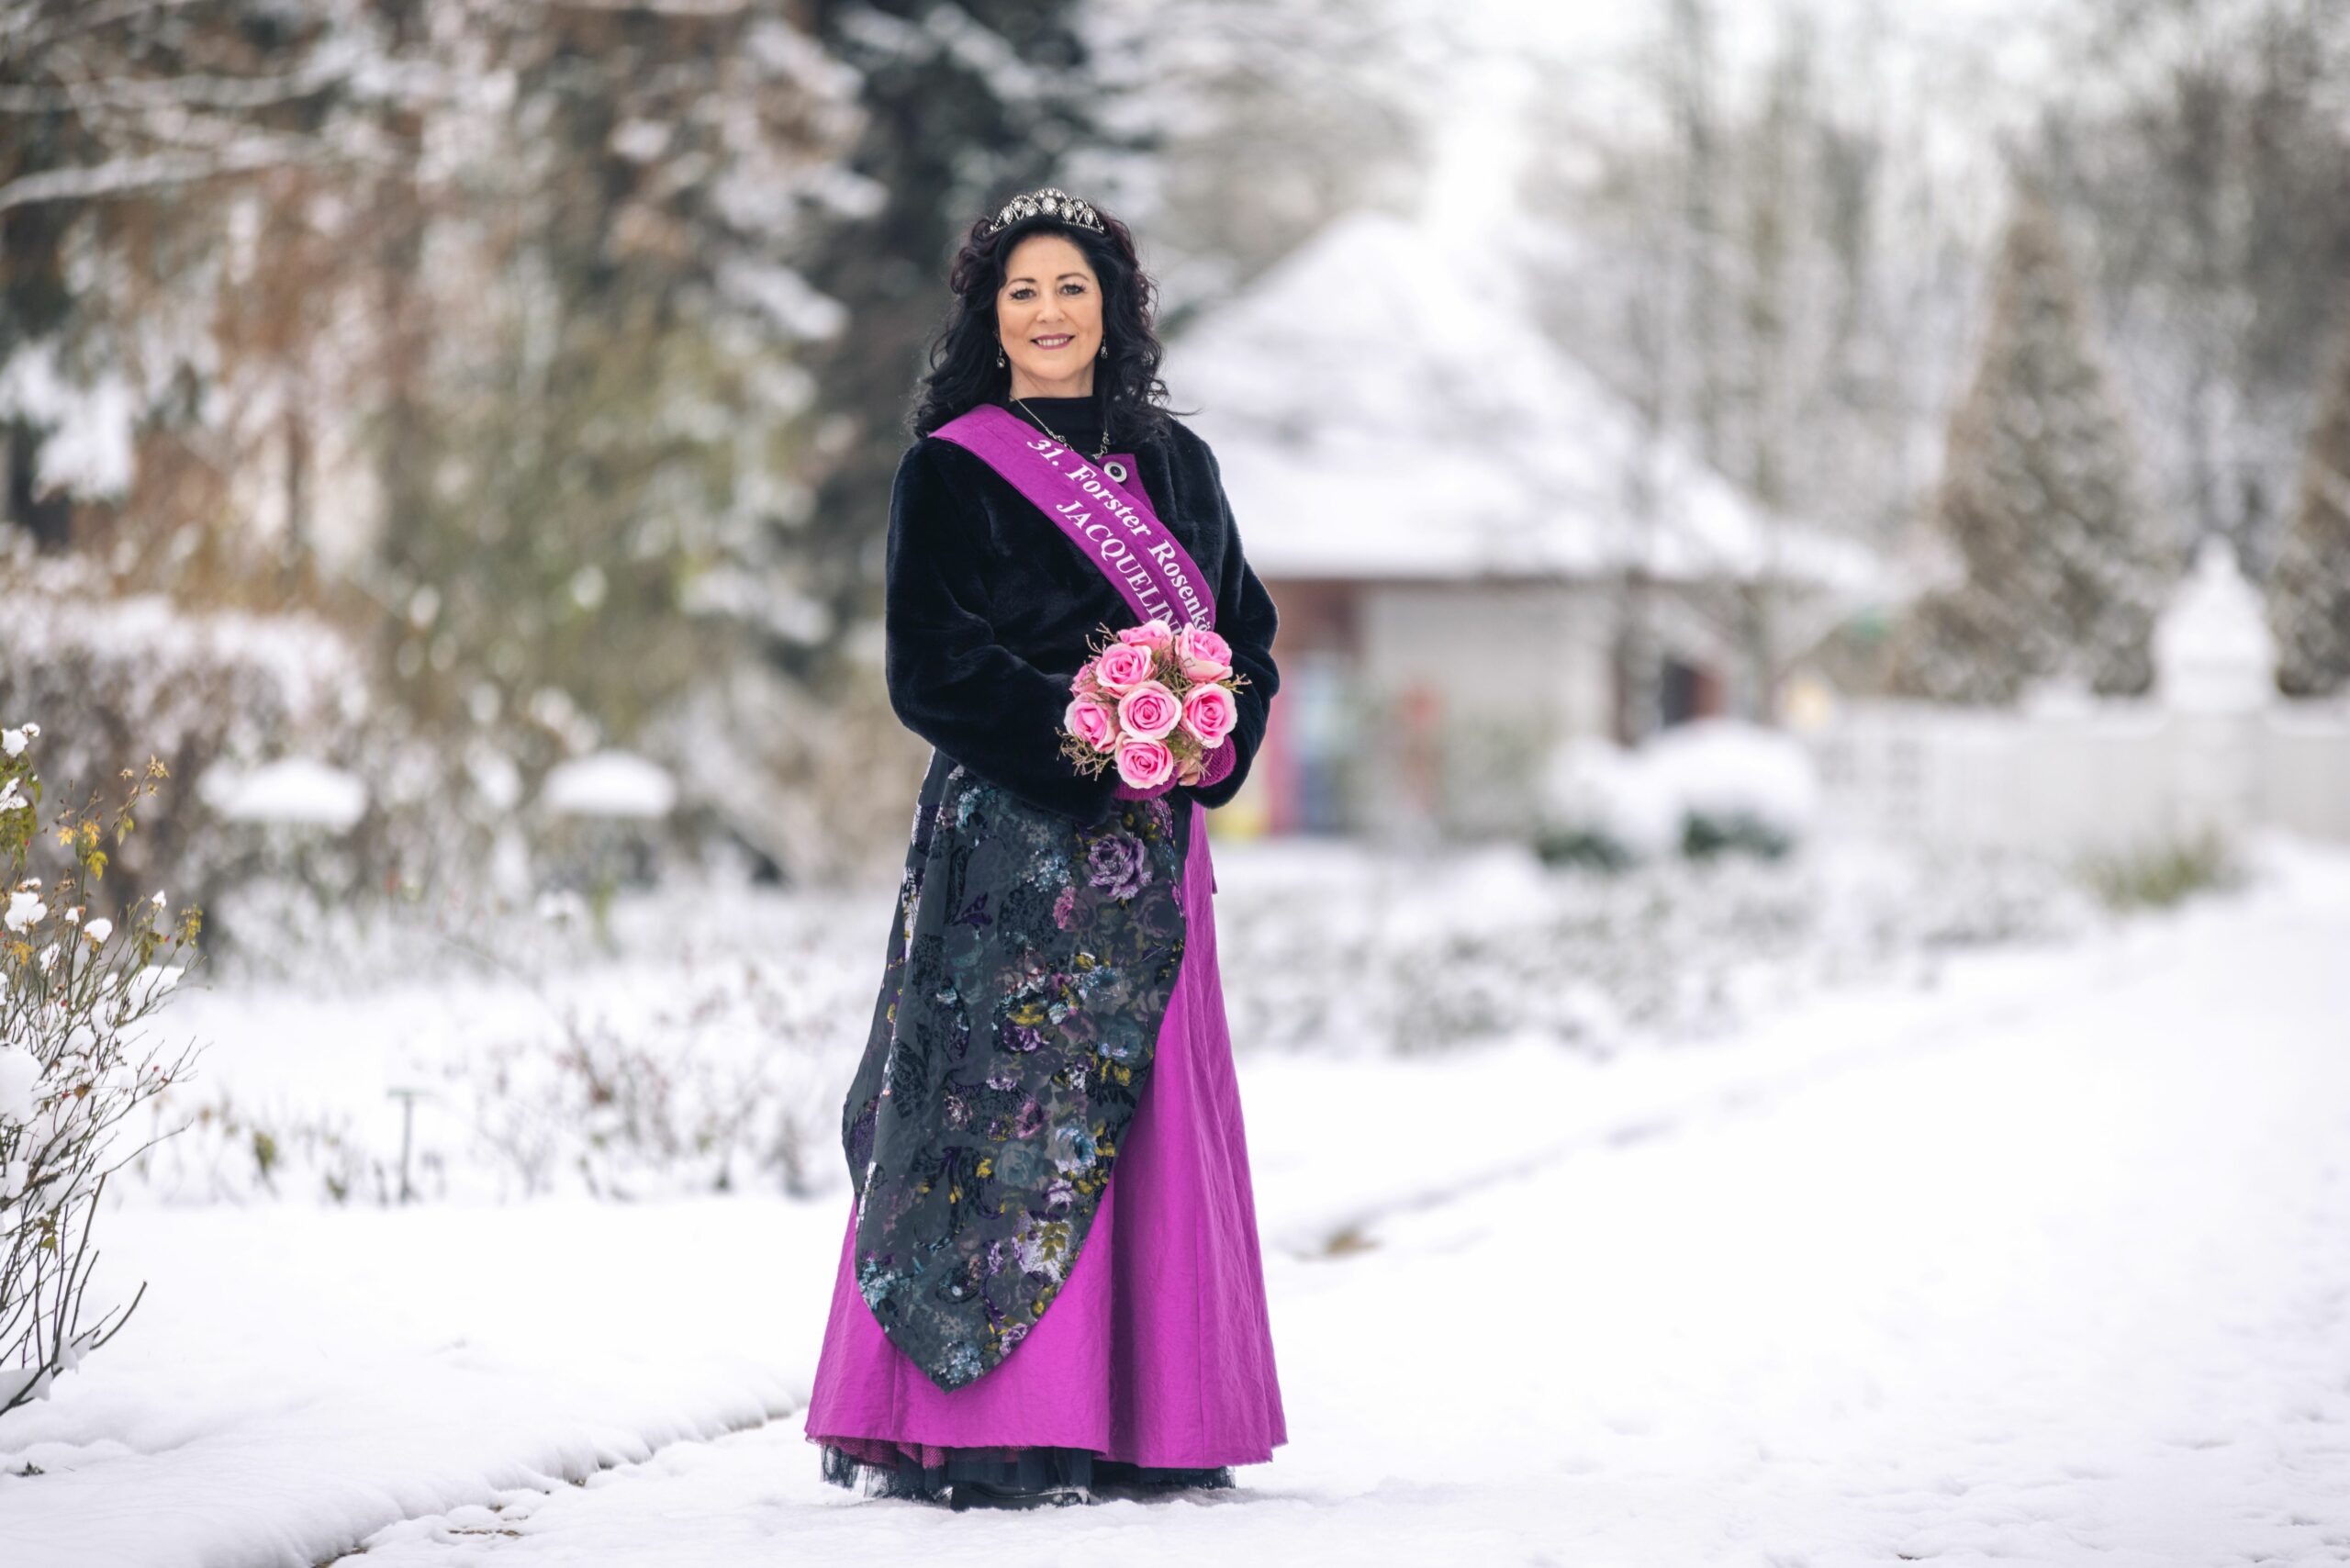 Die Forster Rosenkönigin steht im Schnee